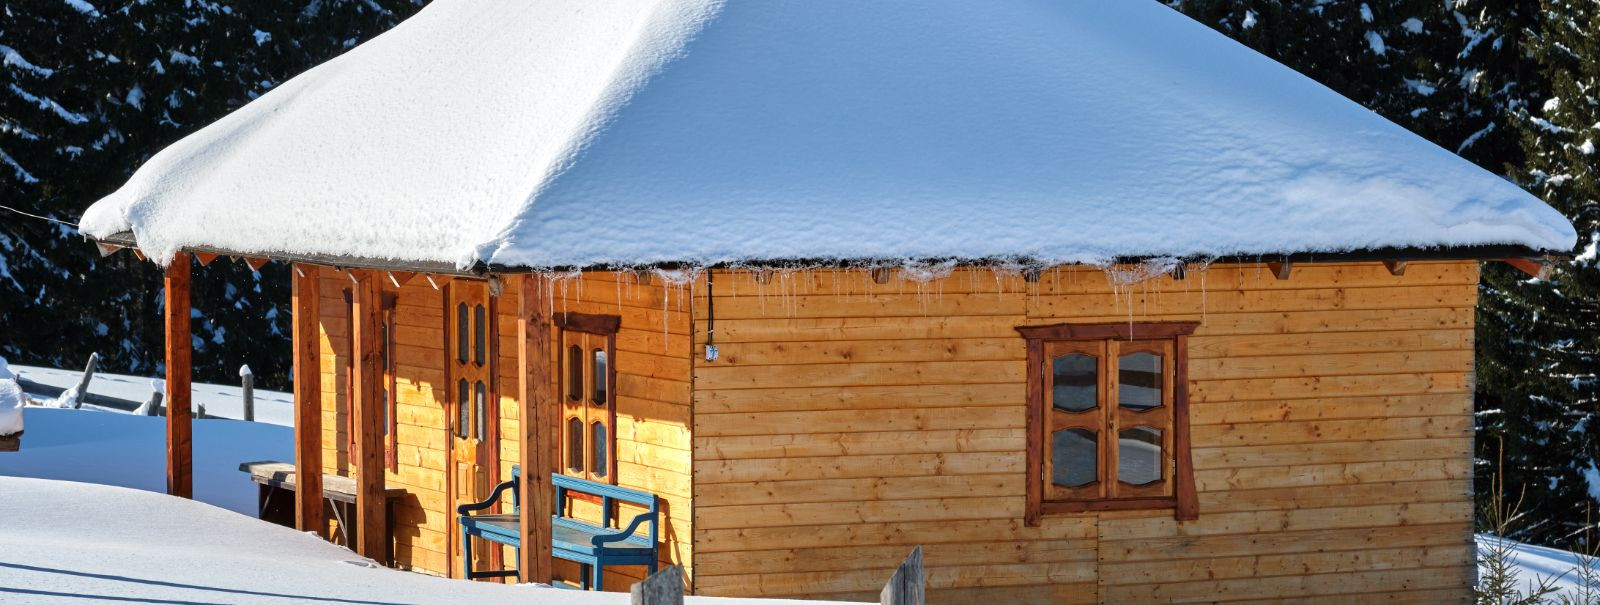 Talveperioodil on lumine ilm tavaline nähtus. Kuigi lumine vaatepilt on kaunis, võib see tekitada ka mõningaid probleeme, näiteks katuste koormuse suurenemist. 